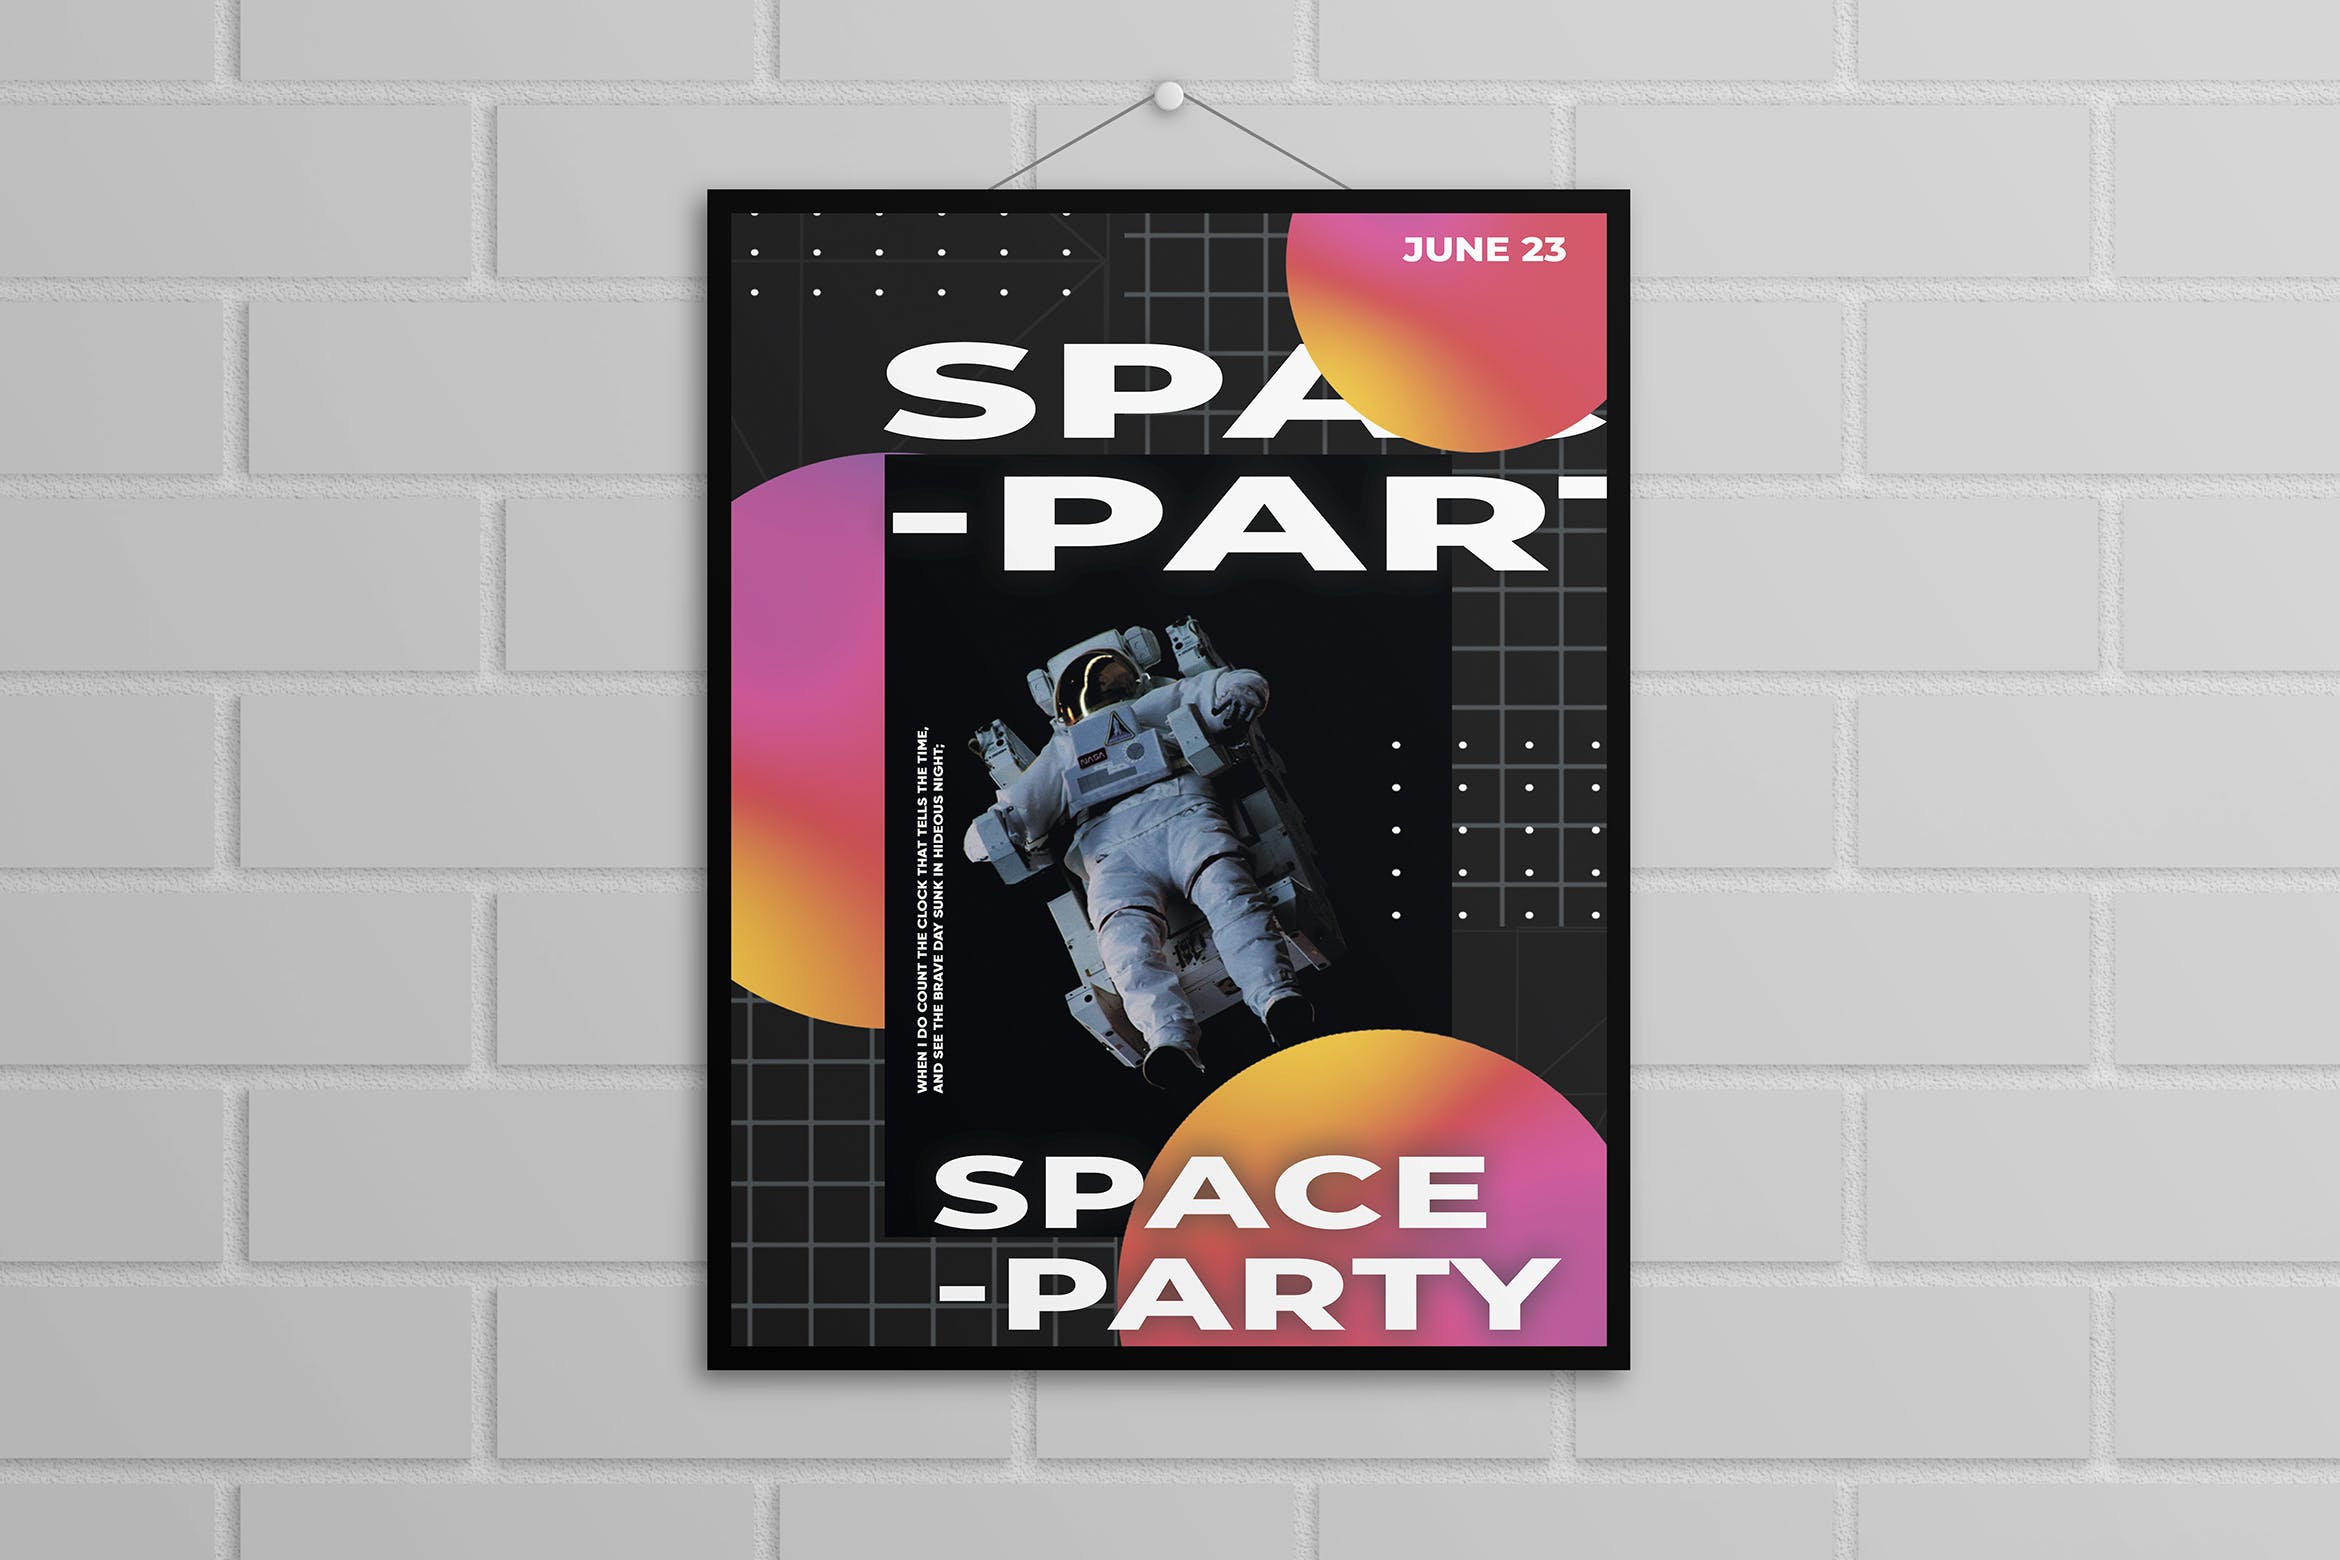 宇航员/航空主题海报PSD素材第一素材精选模板 Astronaut Poster Template插图